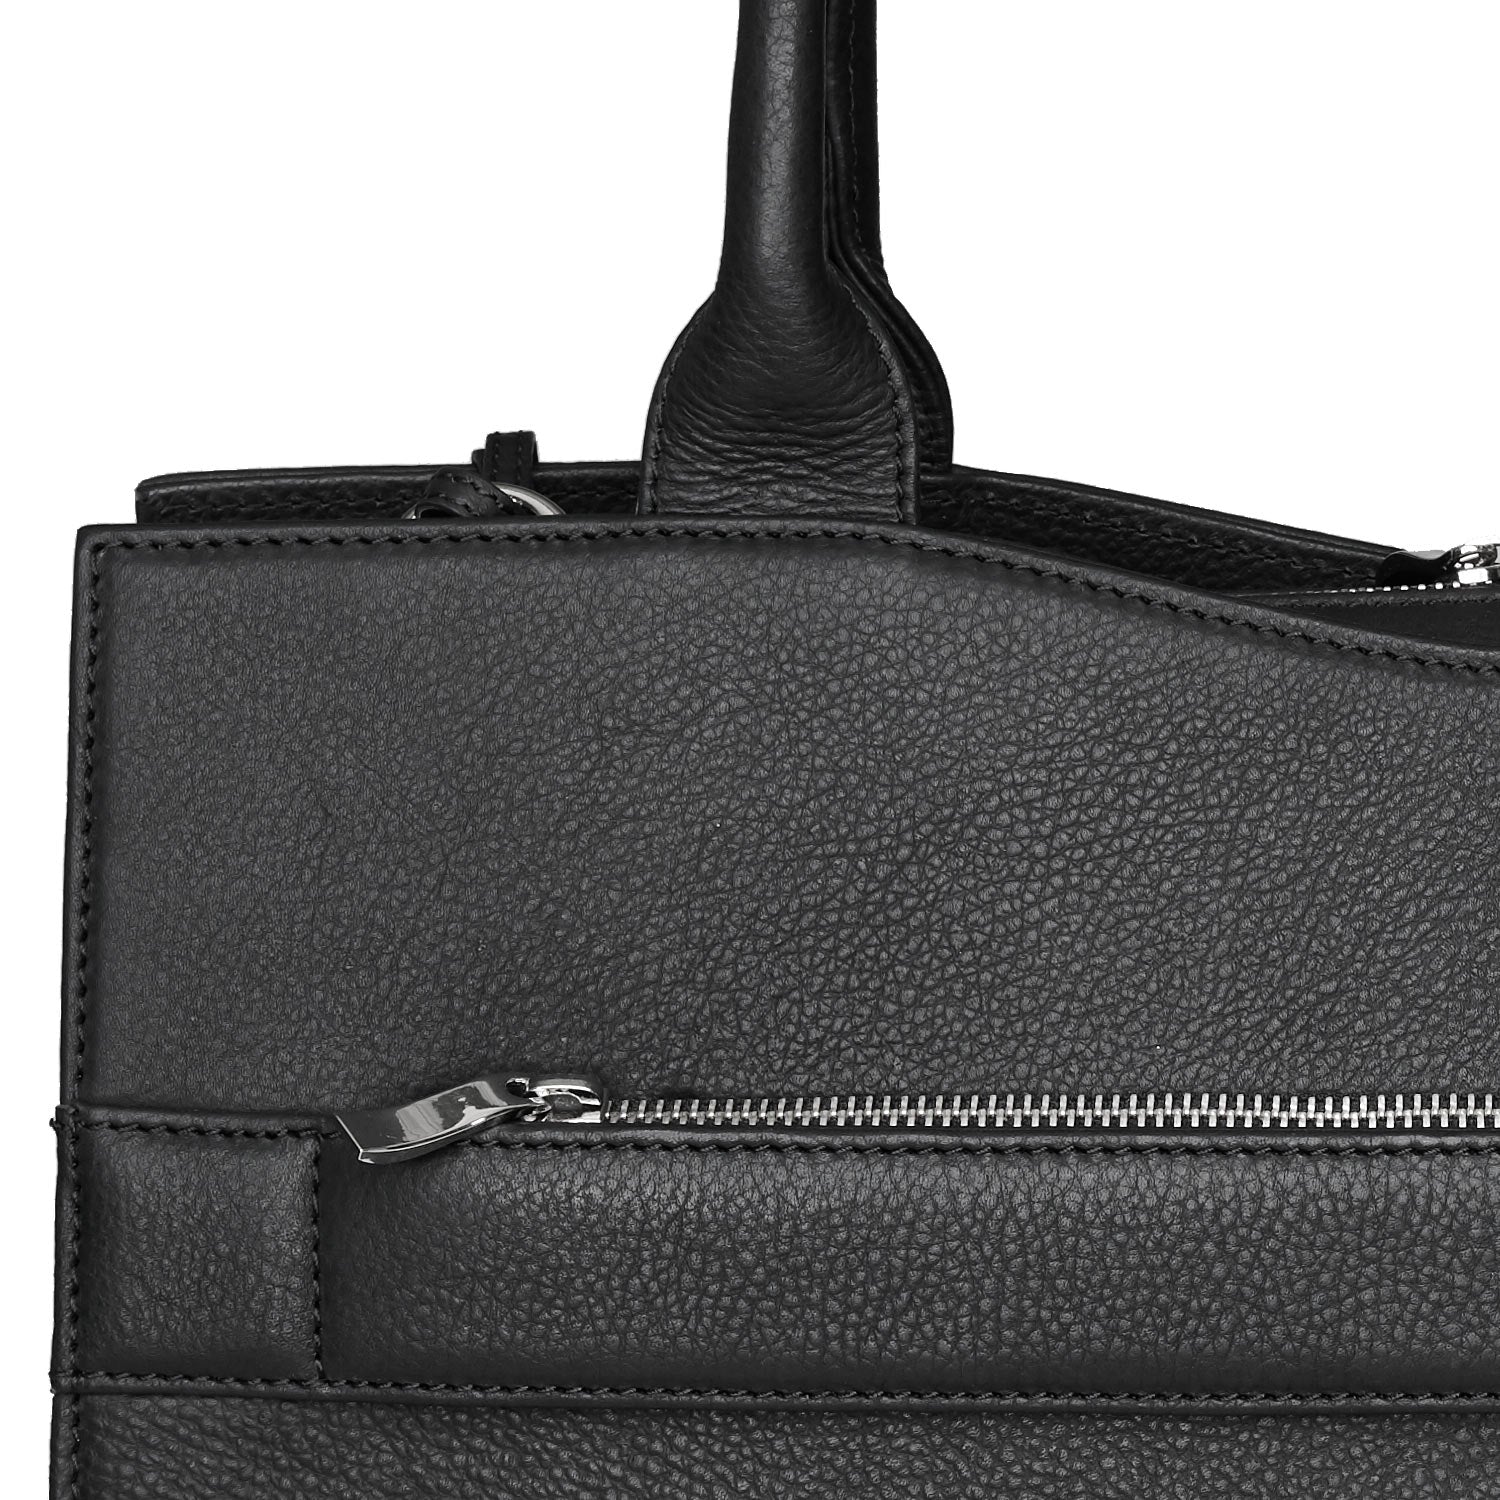 Socha straight line zwarte leren tas 15.6 inch werktas voor dames rits tas